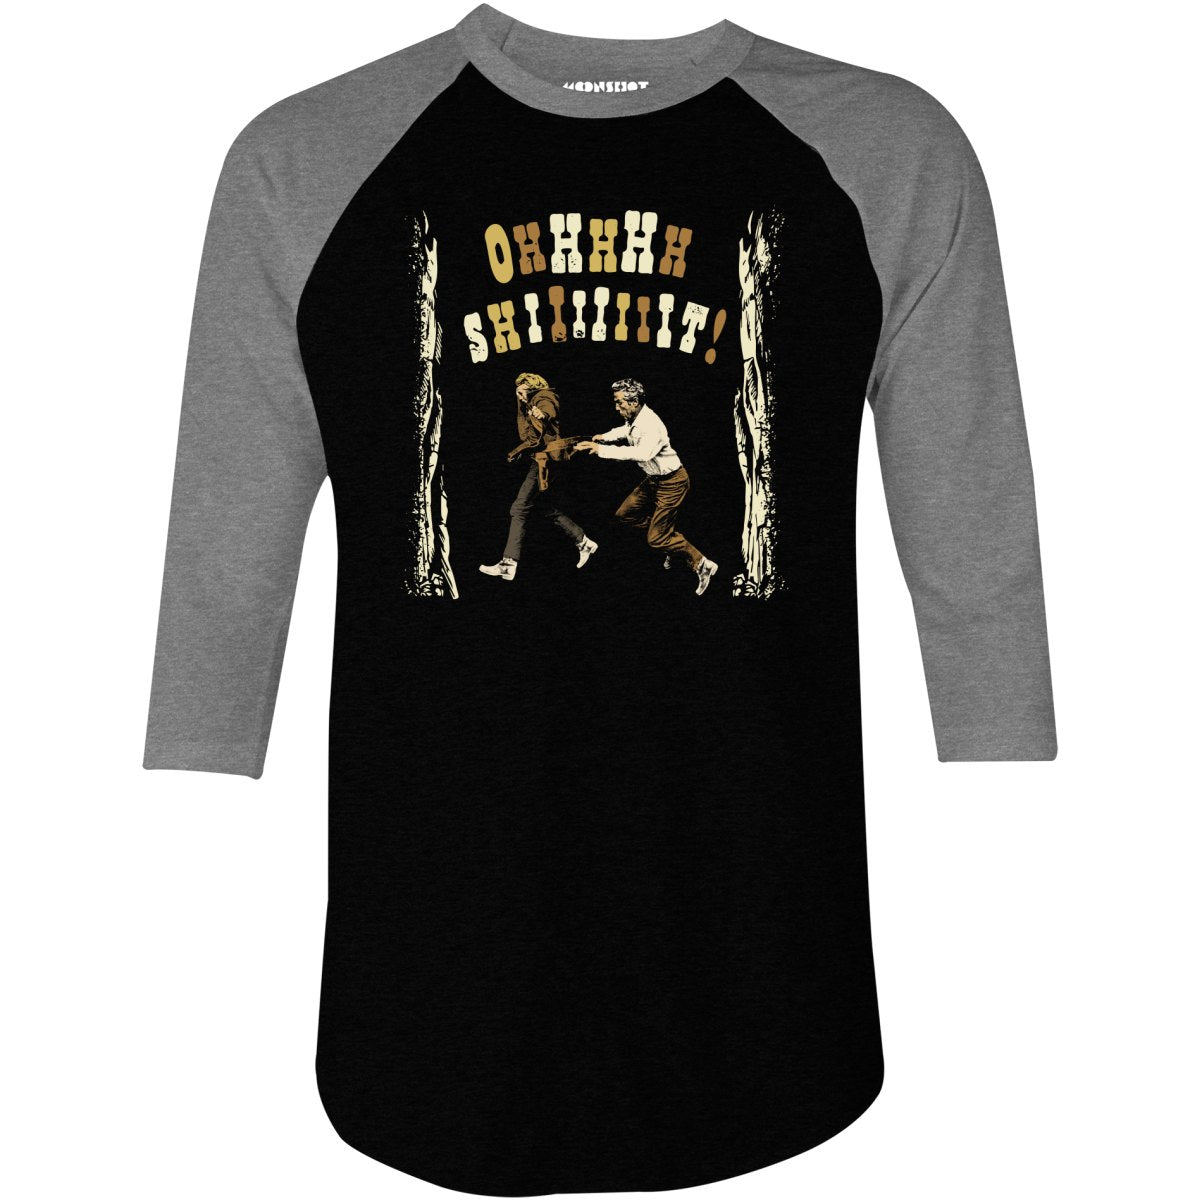 Ohhhhh Shiiiiiiit - Butch Cassidy & The Sundance Kid - 3/4 Sleeve Raglan T-Shirt